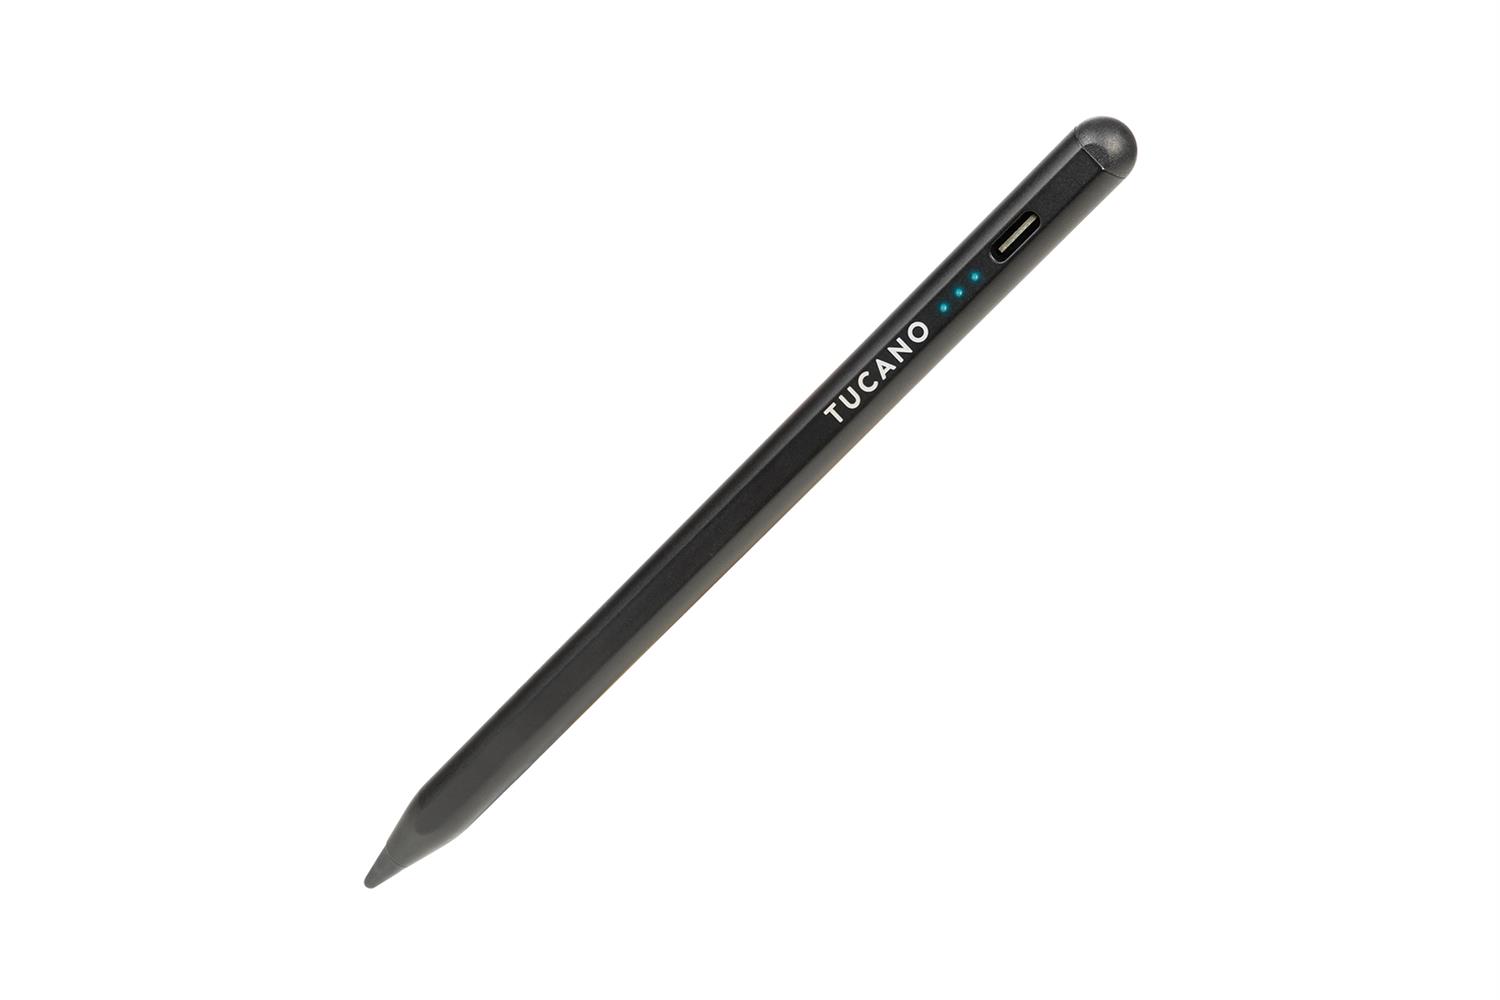 Tucano Universal Active Stylus Pen - Eingabestift für alle gängigen Smartphones, iPads, Tablets - Schwarz